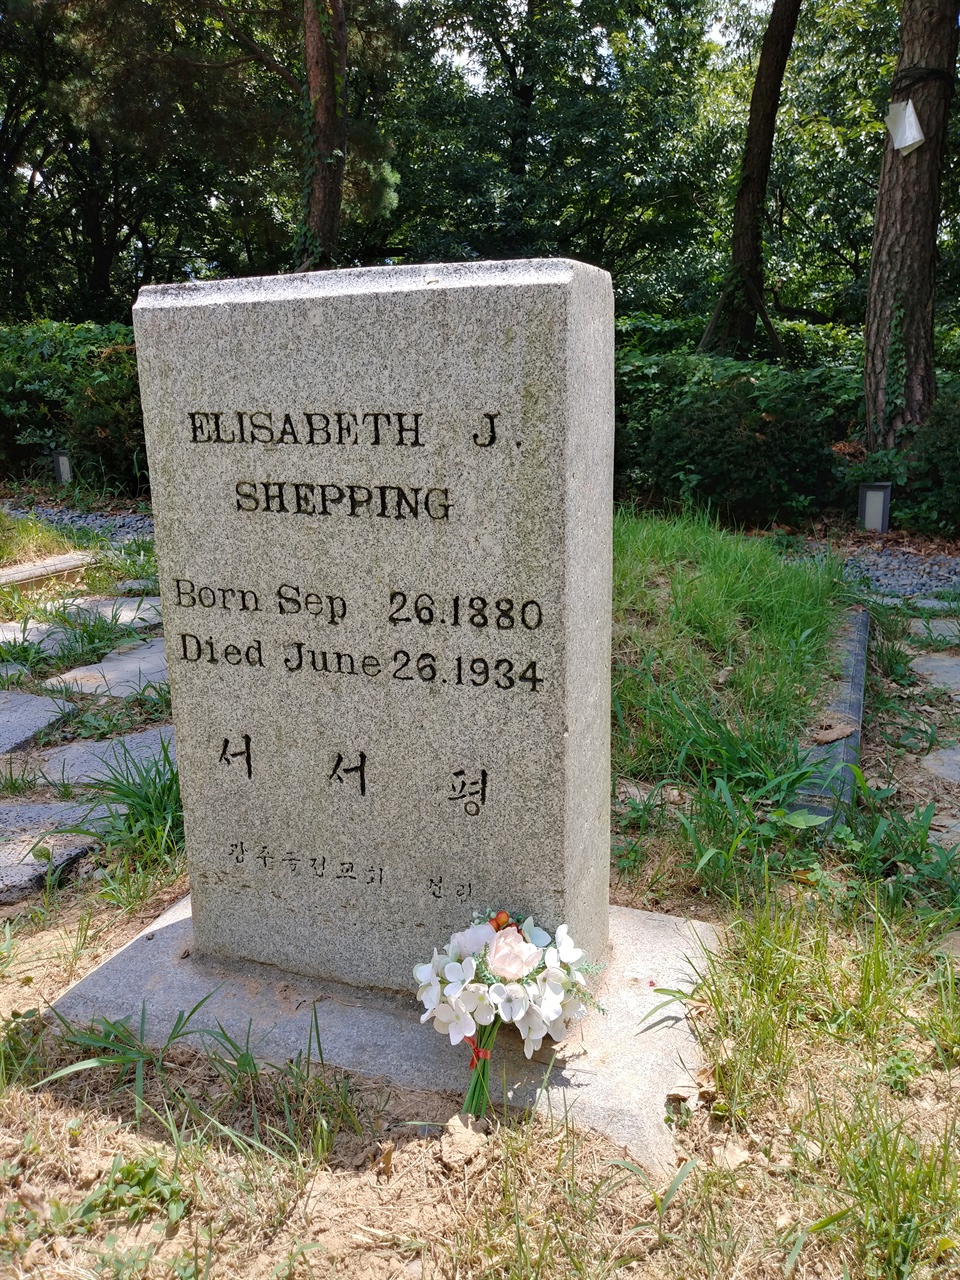 광주 양림동 선교사 묘역에 잠든 서서평의 소박한 무덤. 묘비에 그의 본명과 생몰연도와 일자가 새겨져 있다.